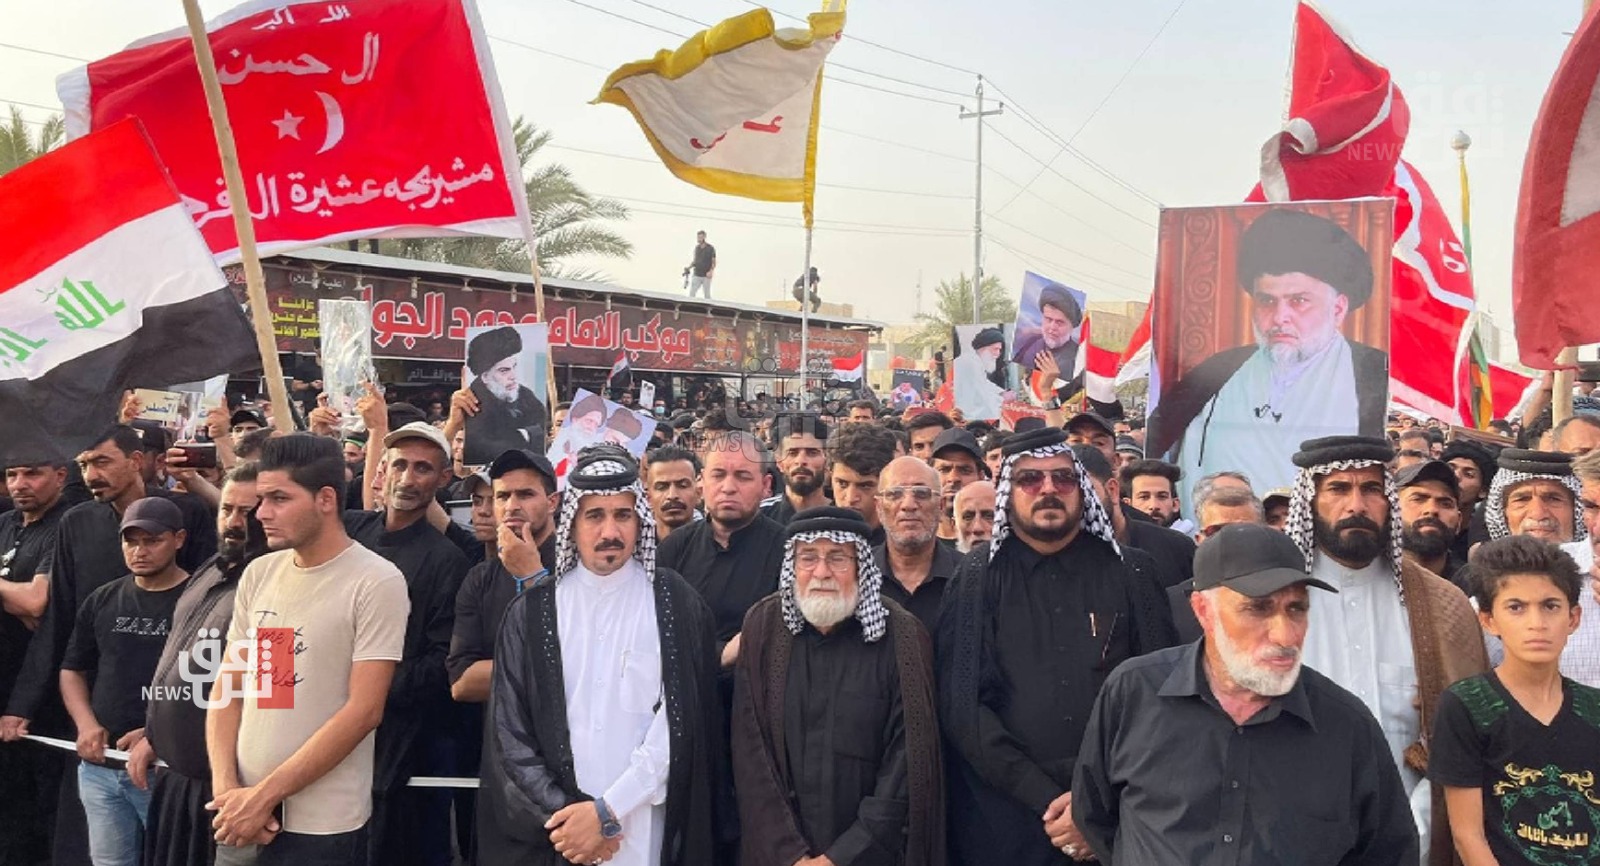 وزير الصدر يدعو لتظاهرات "مليونية" في ساحة التحرير وسط بغداد